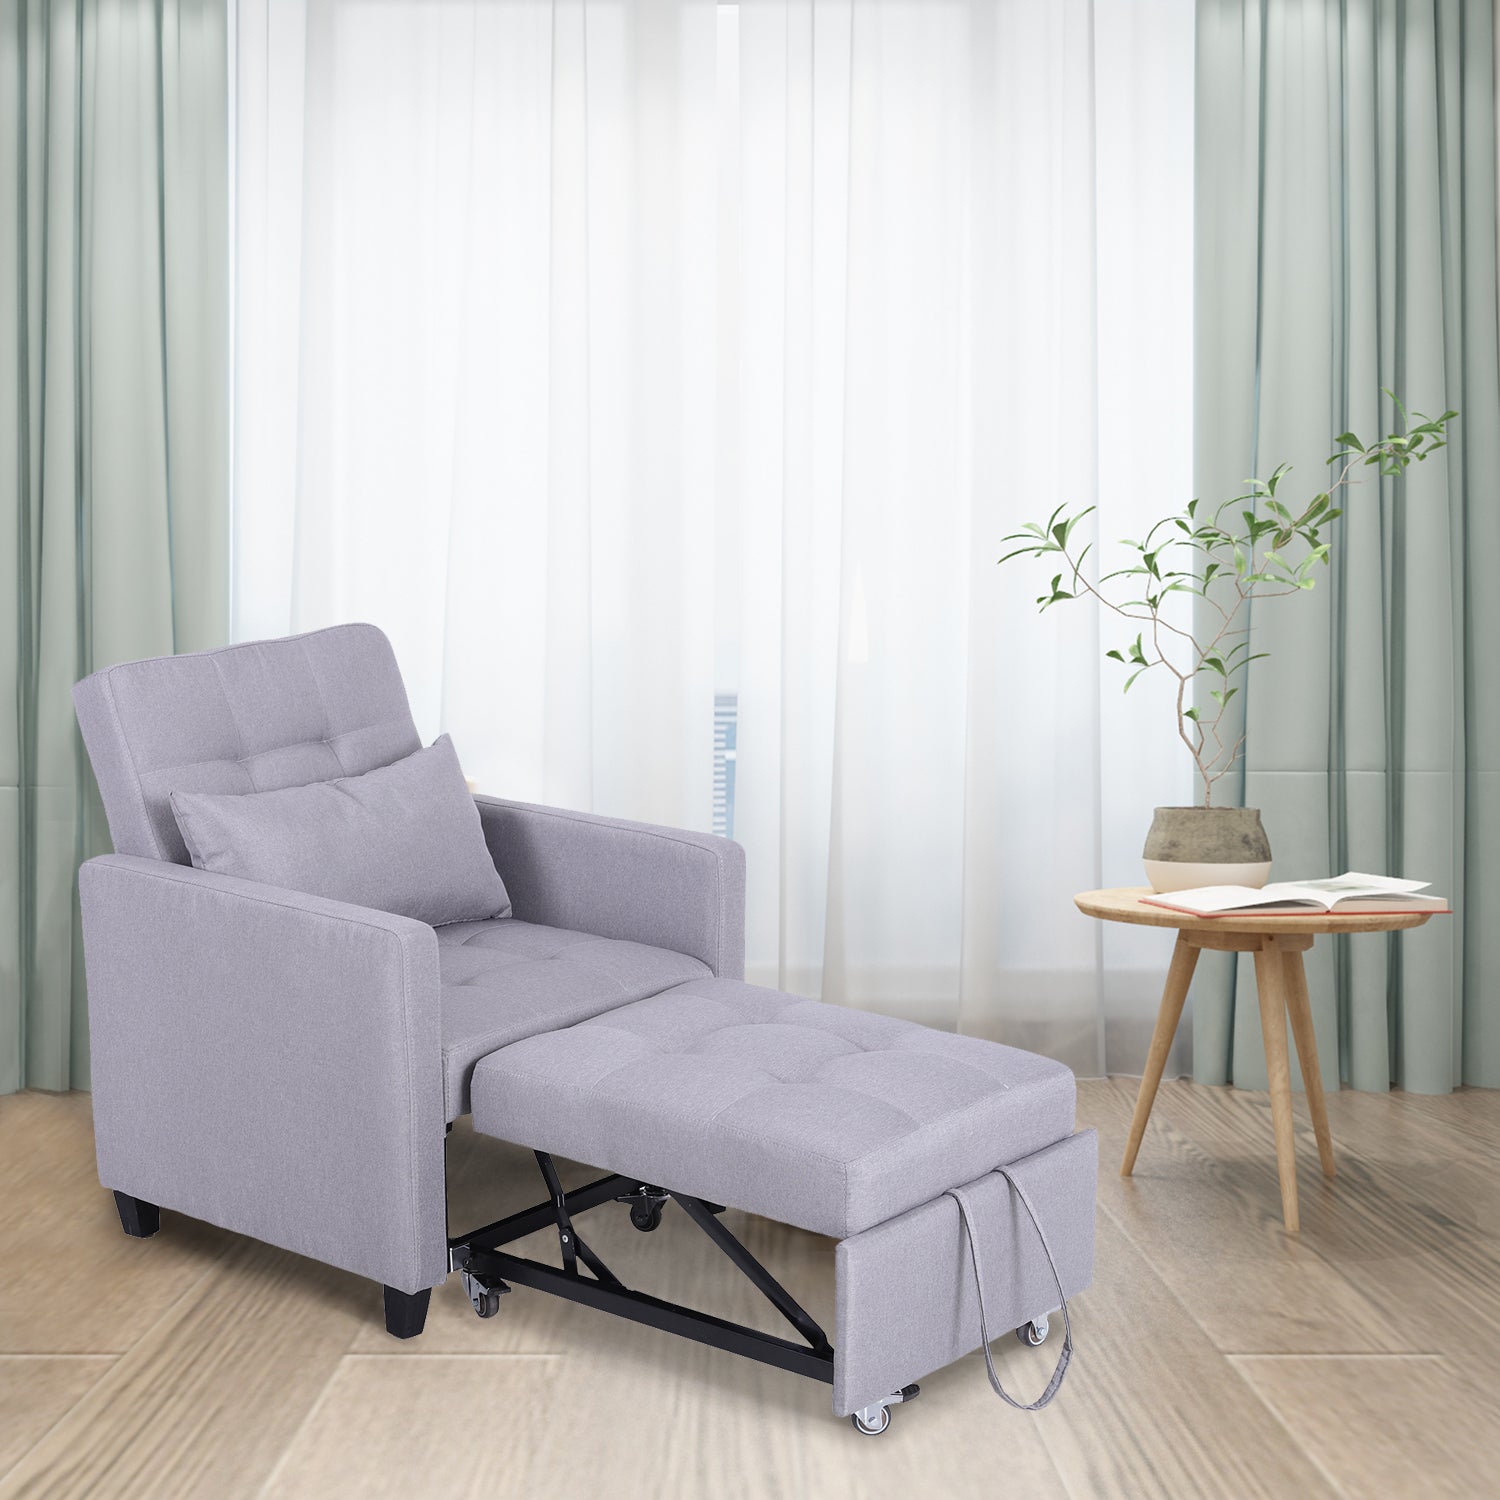 PHI VILLA Convertible Sofa Bed Living Room Recliner